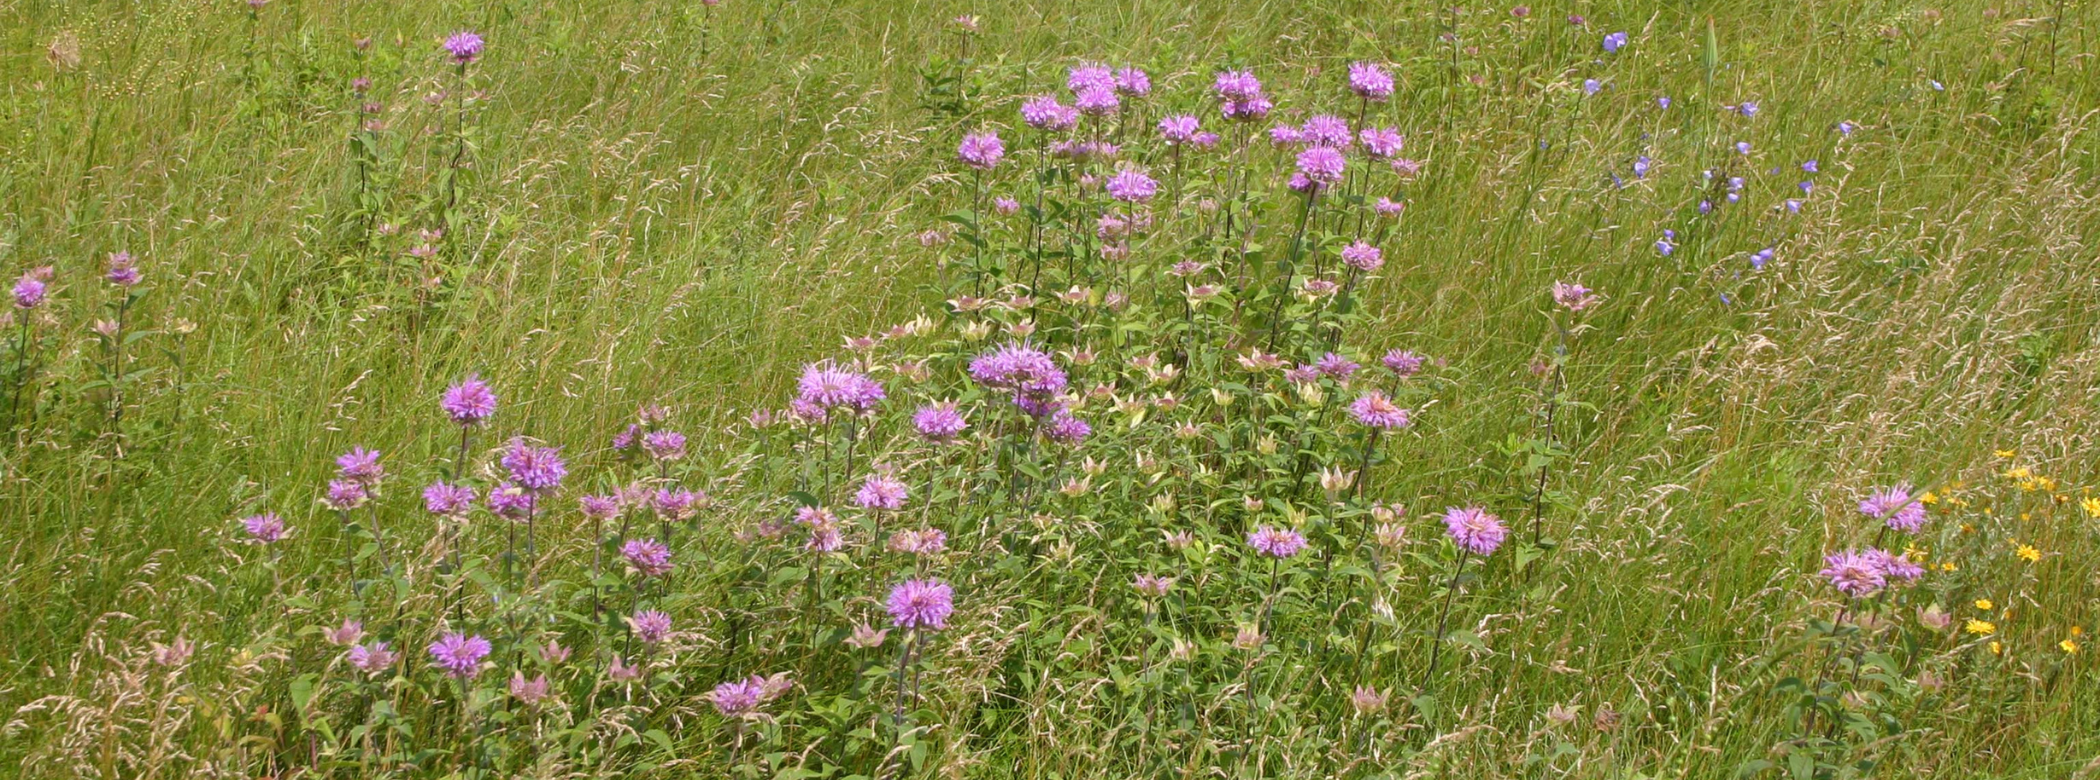 Purple flowers growing in a field.